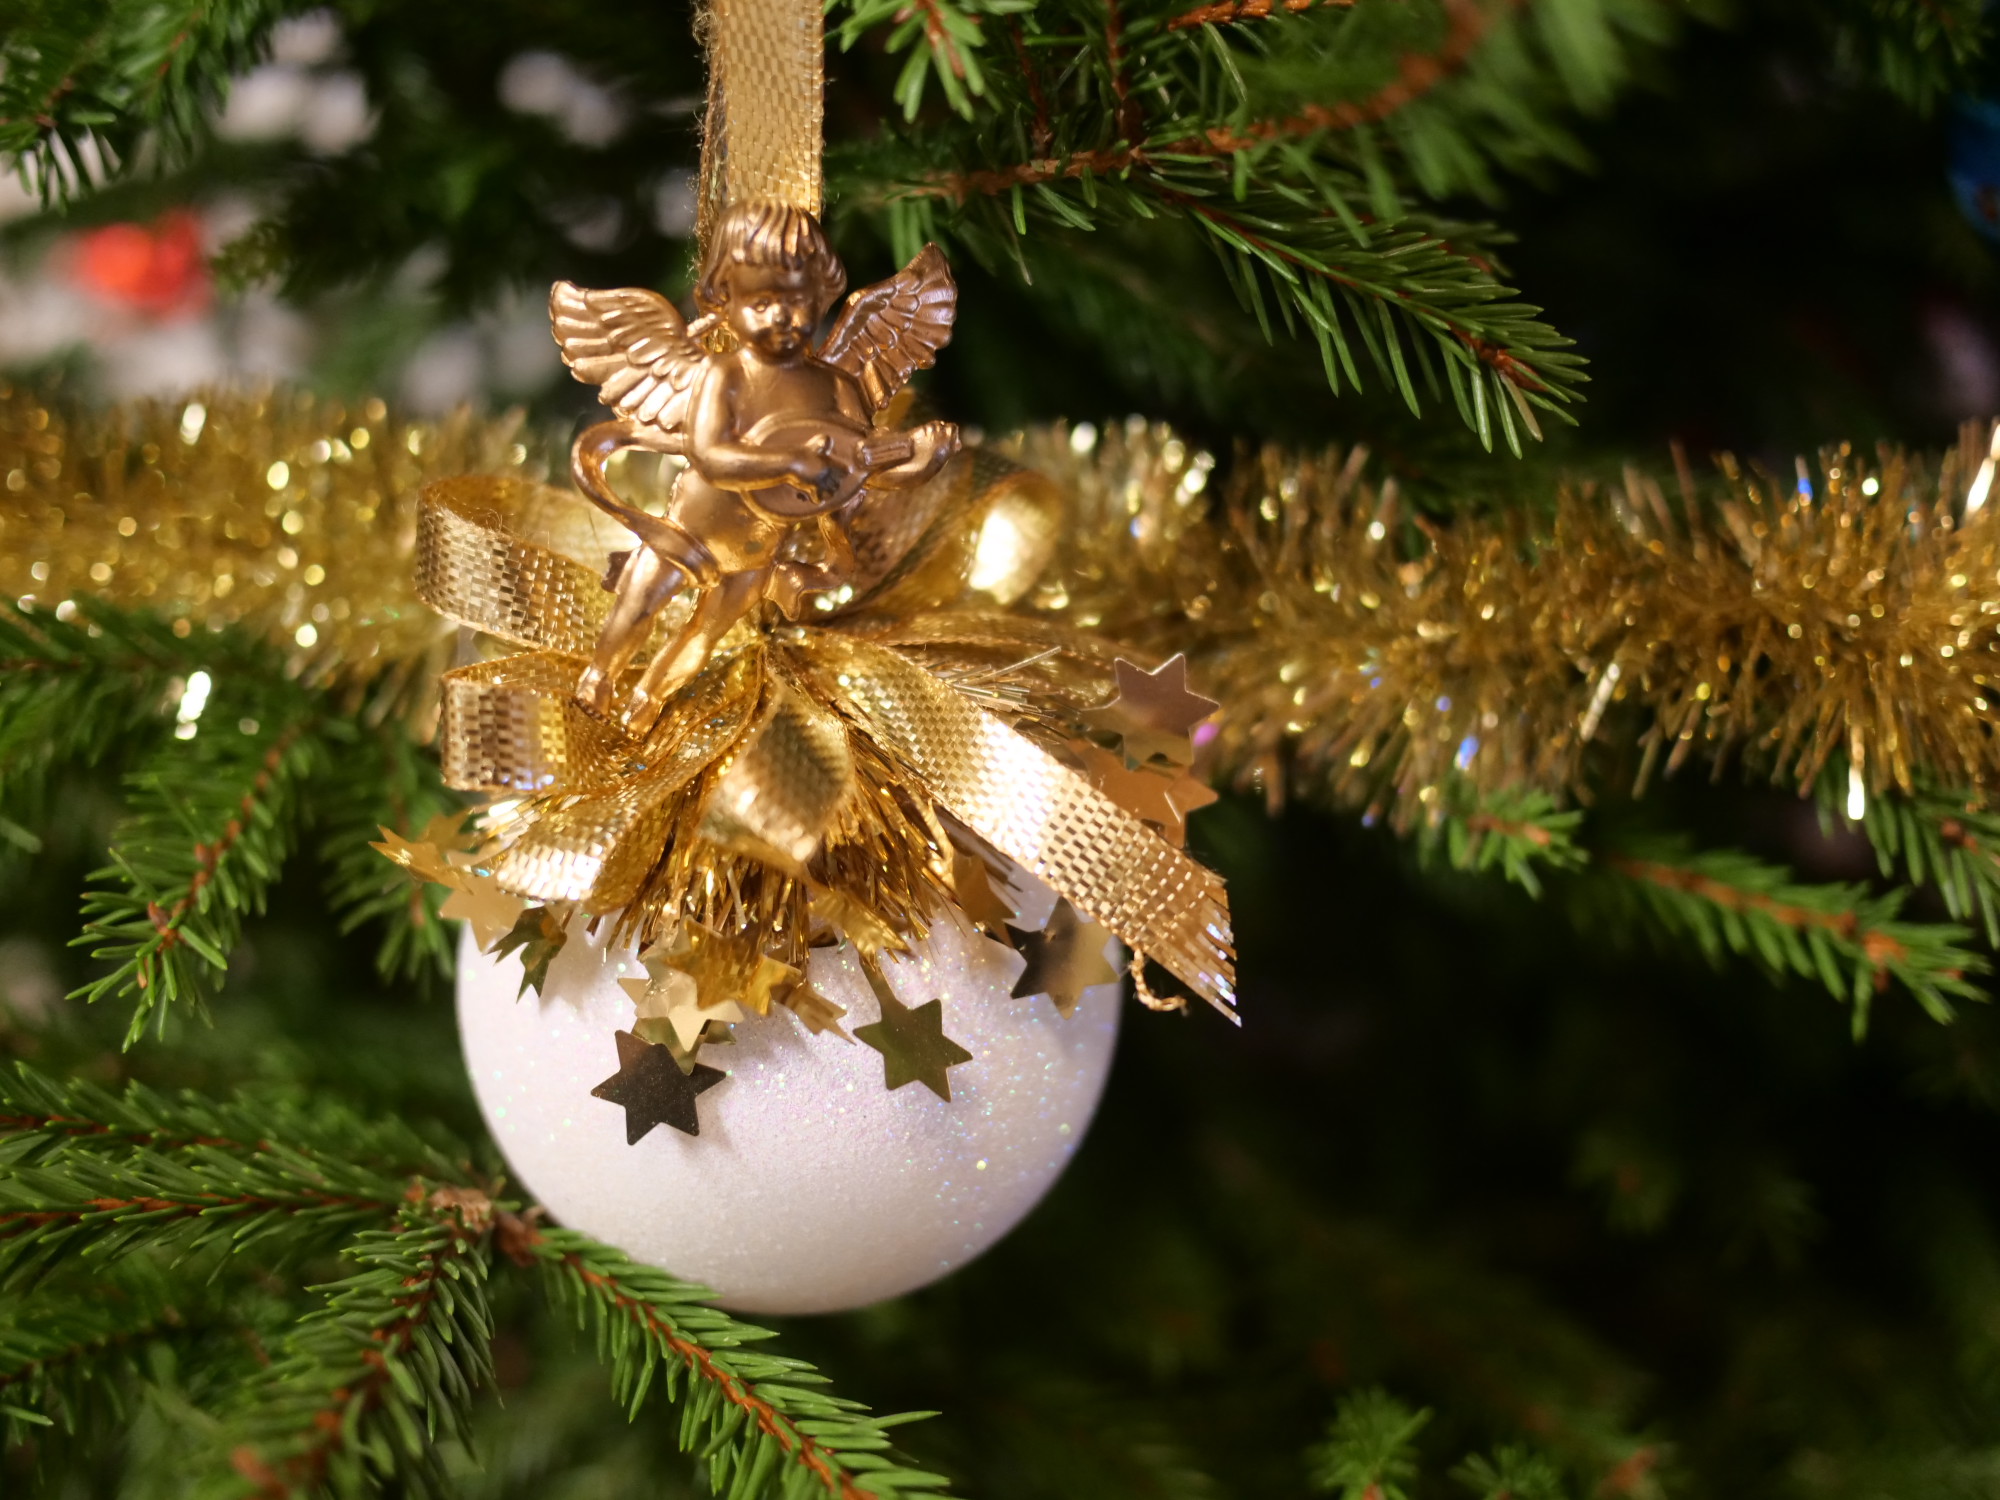 iso valkoinen joulupallo, jossa on kultaisia koristeita.